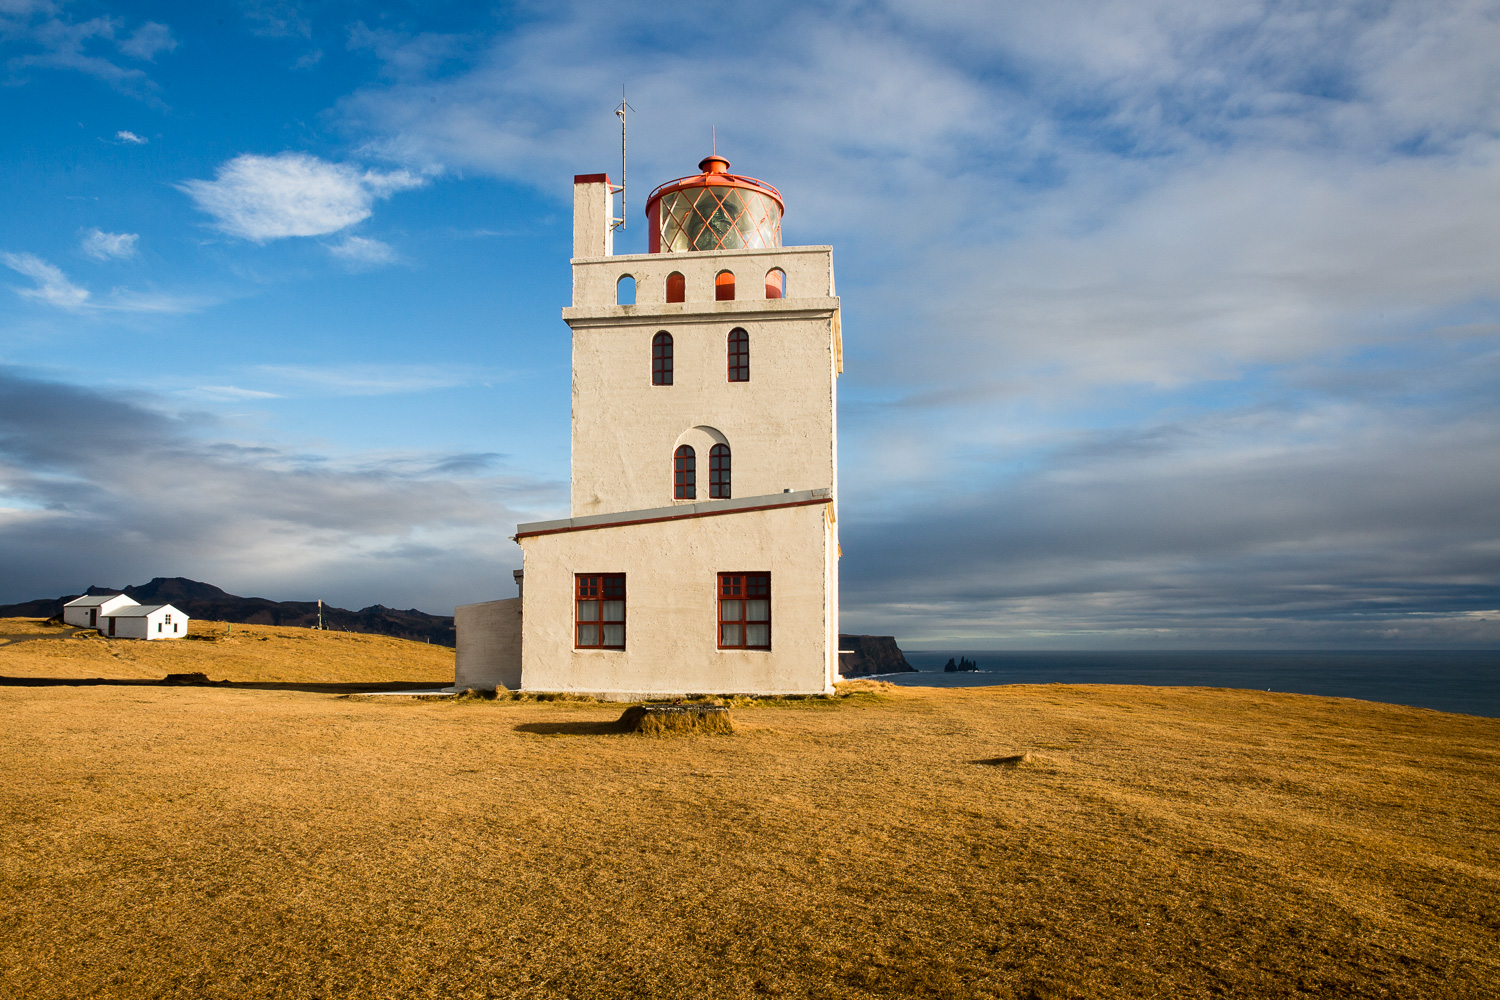 The Dyrhólaey Lighthouse in Iceland